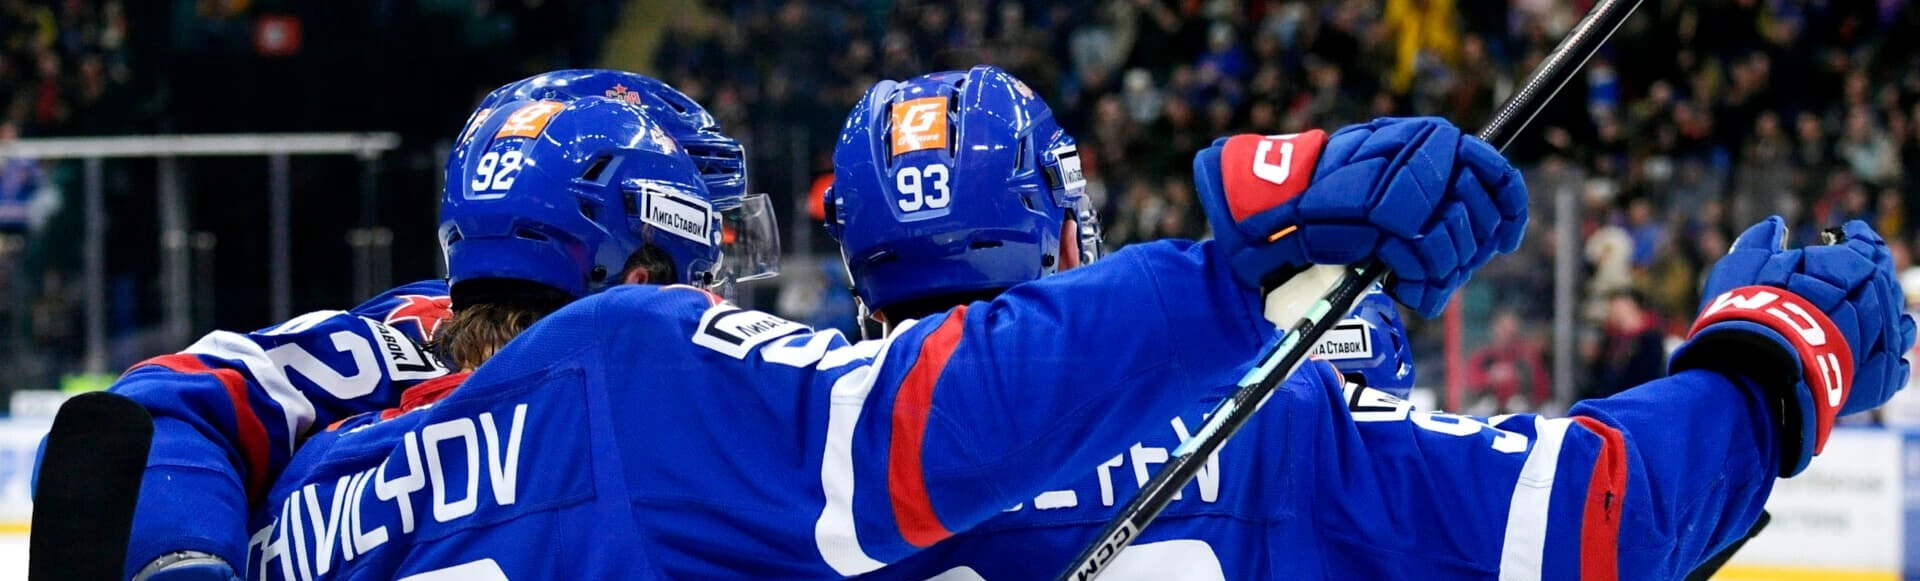 Хоккеисты СКА на своей площадке одержали победу над московским ЦСКА со счетом 2:1.